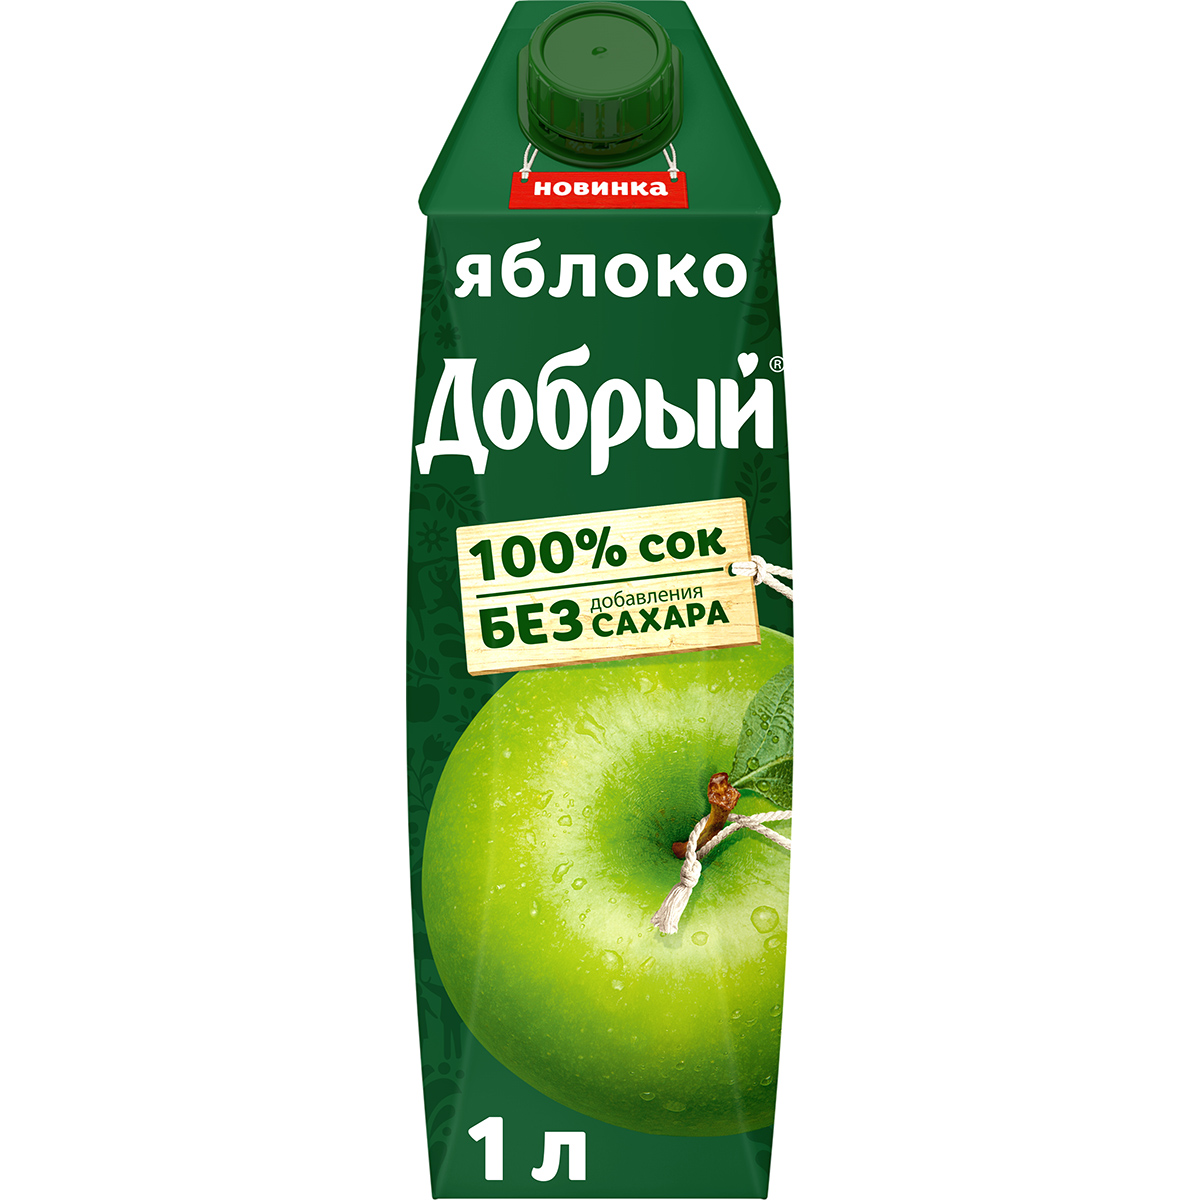 сок santal яблочный 100% 1 л Сок Добрый яблочный осветленный 100% 1 л